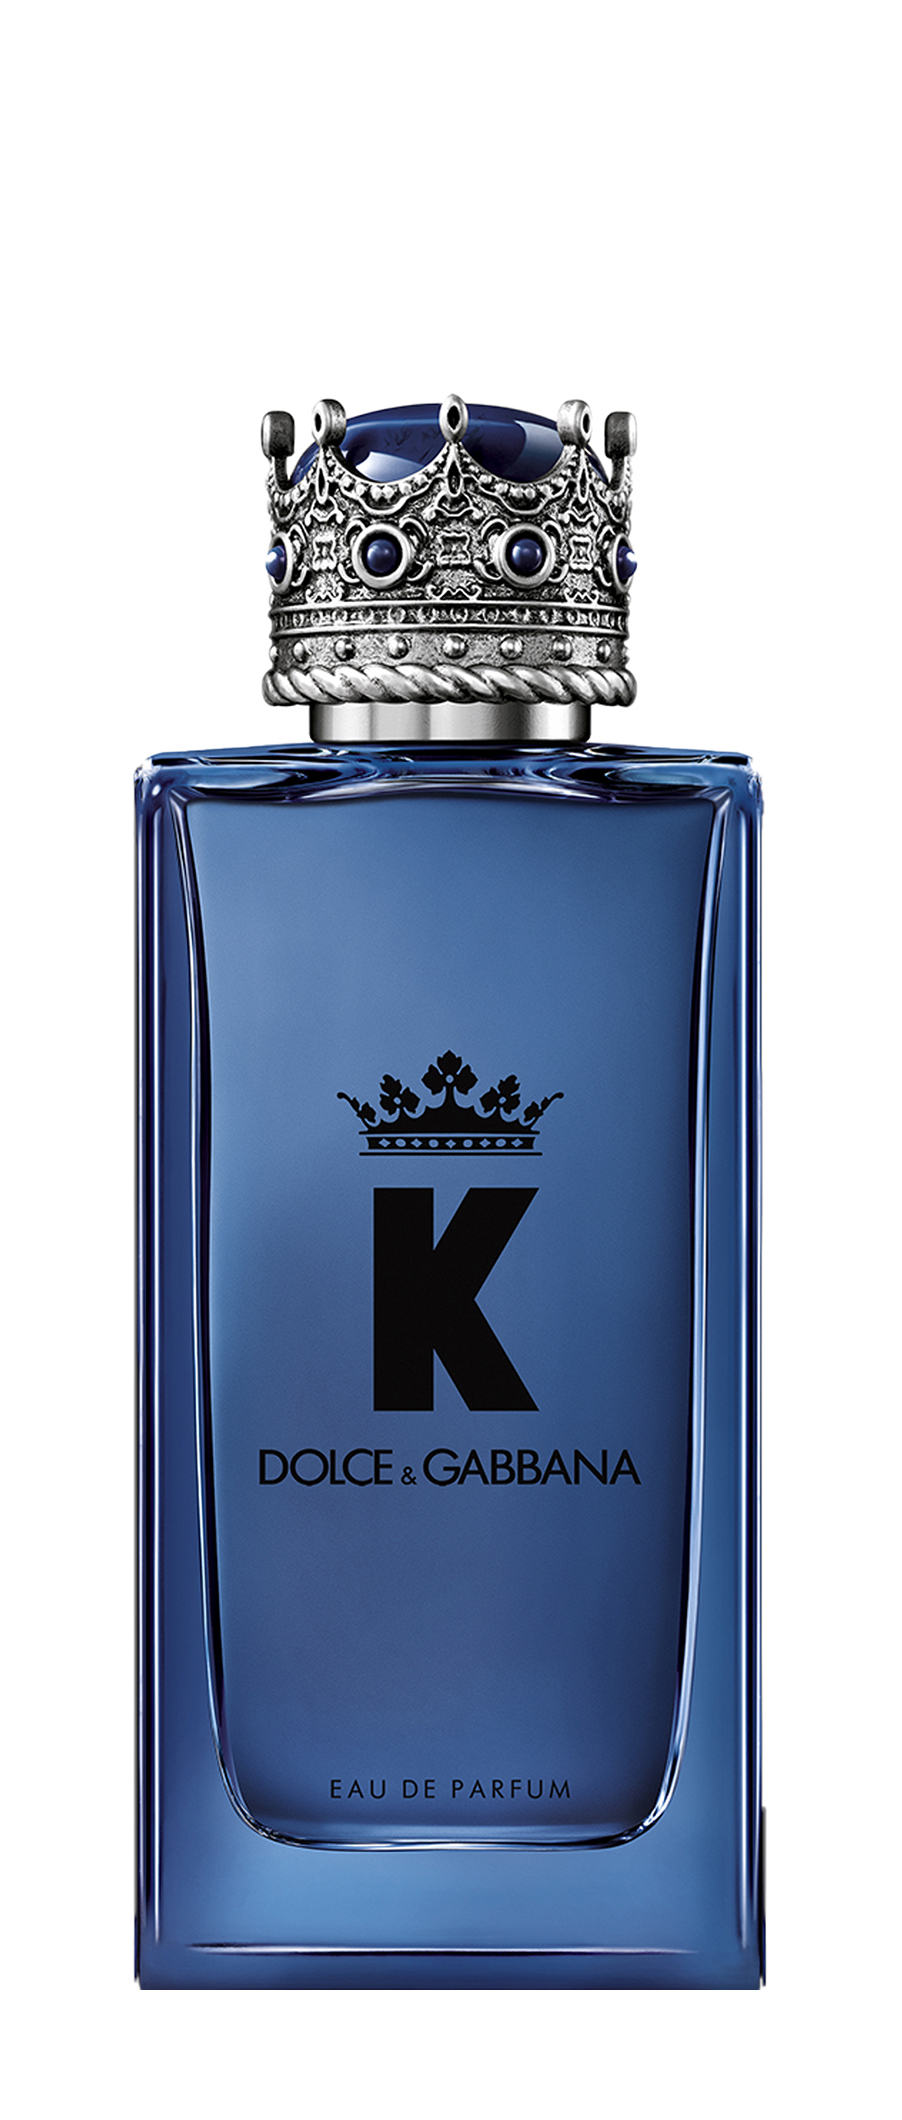 Парфюмерная вода Dolce Gabbana Eau De Parfum 100 мл